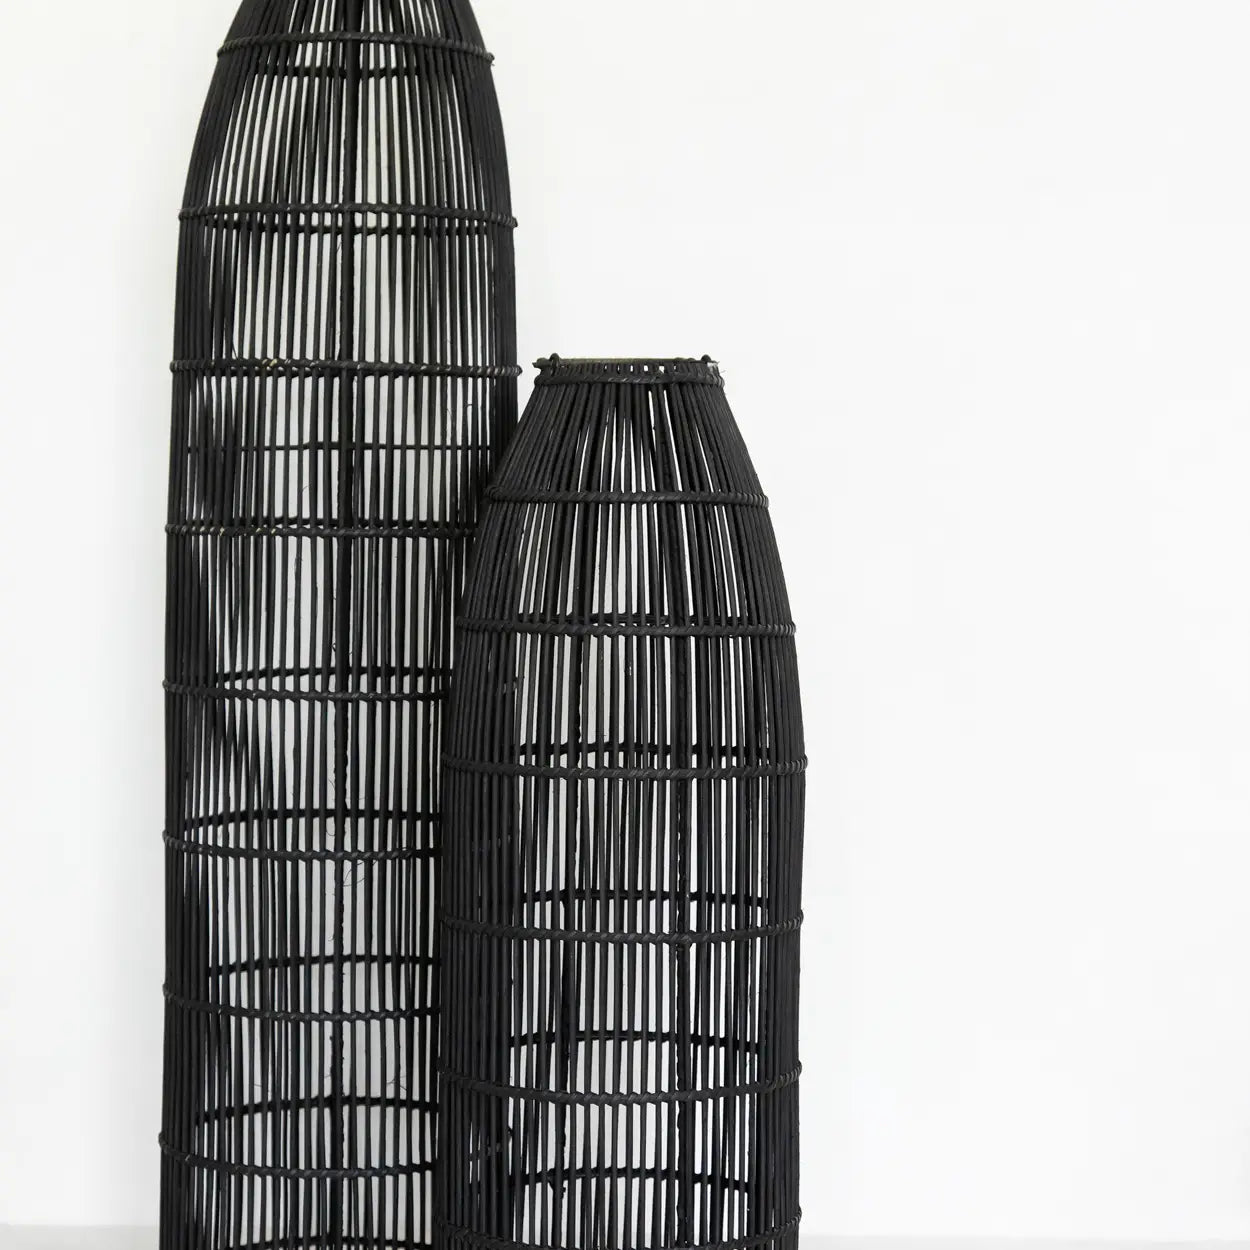 ‘Fish Trap’ Pendant, Large (Black) - EcoLuxe Furnishings